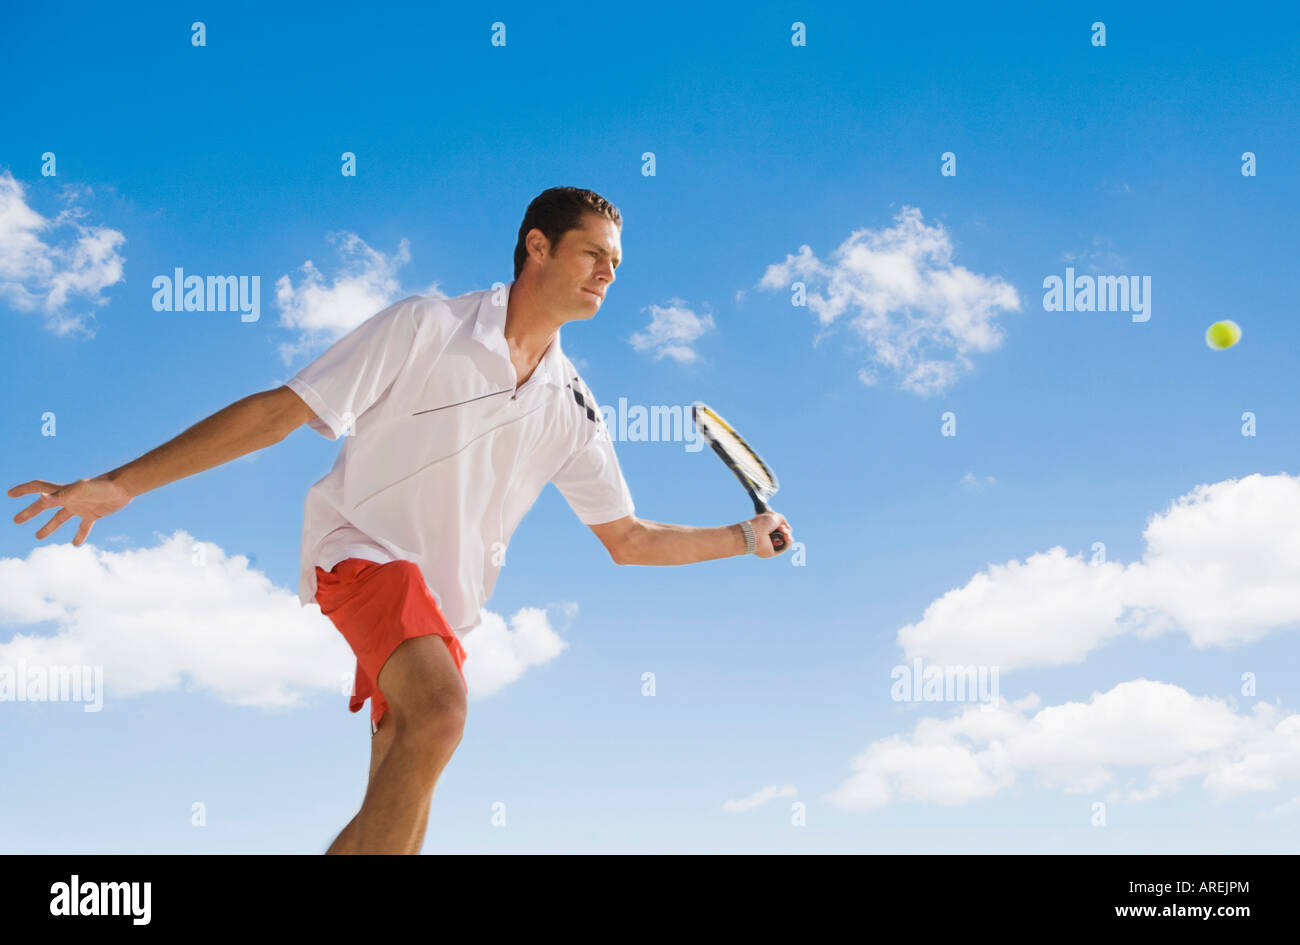 Homme sautant à jouer au tennis smash shot Banque D'Images